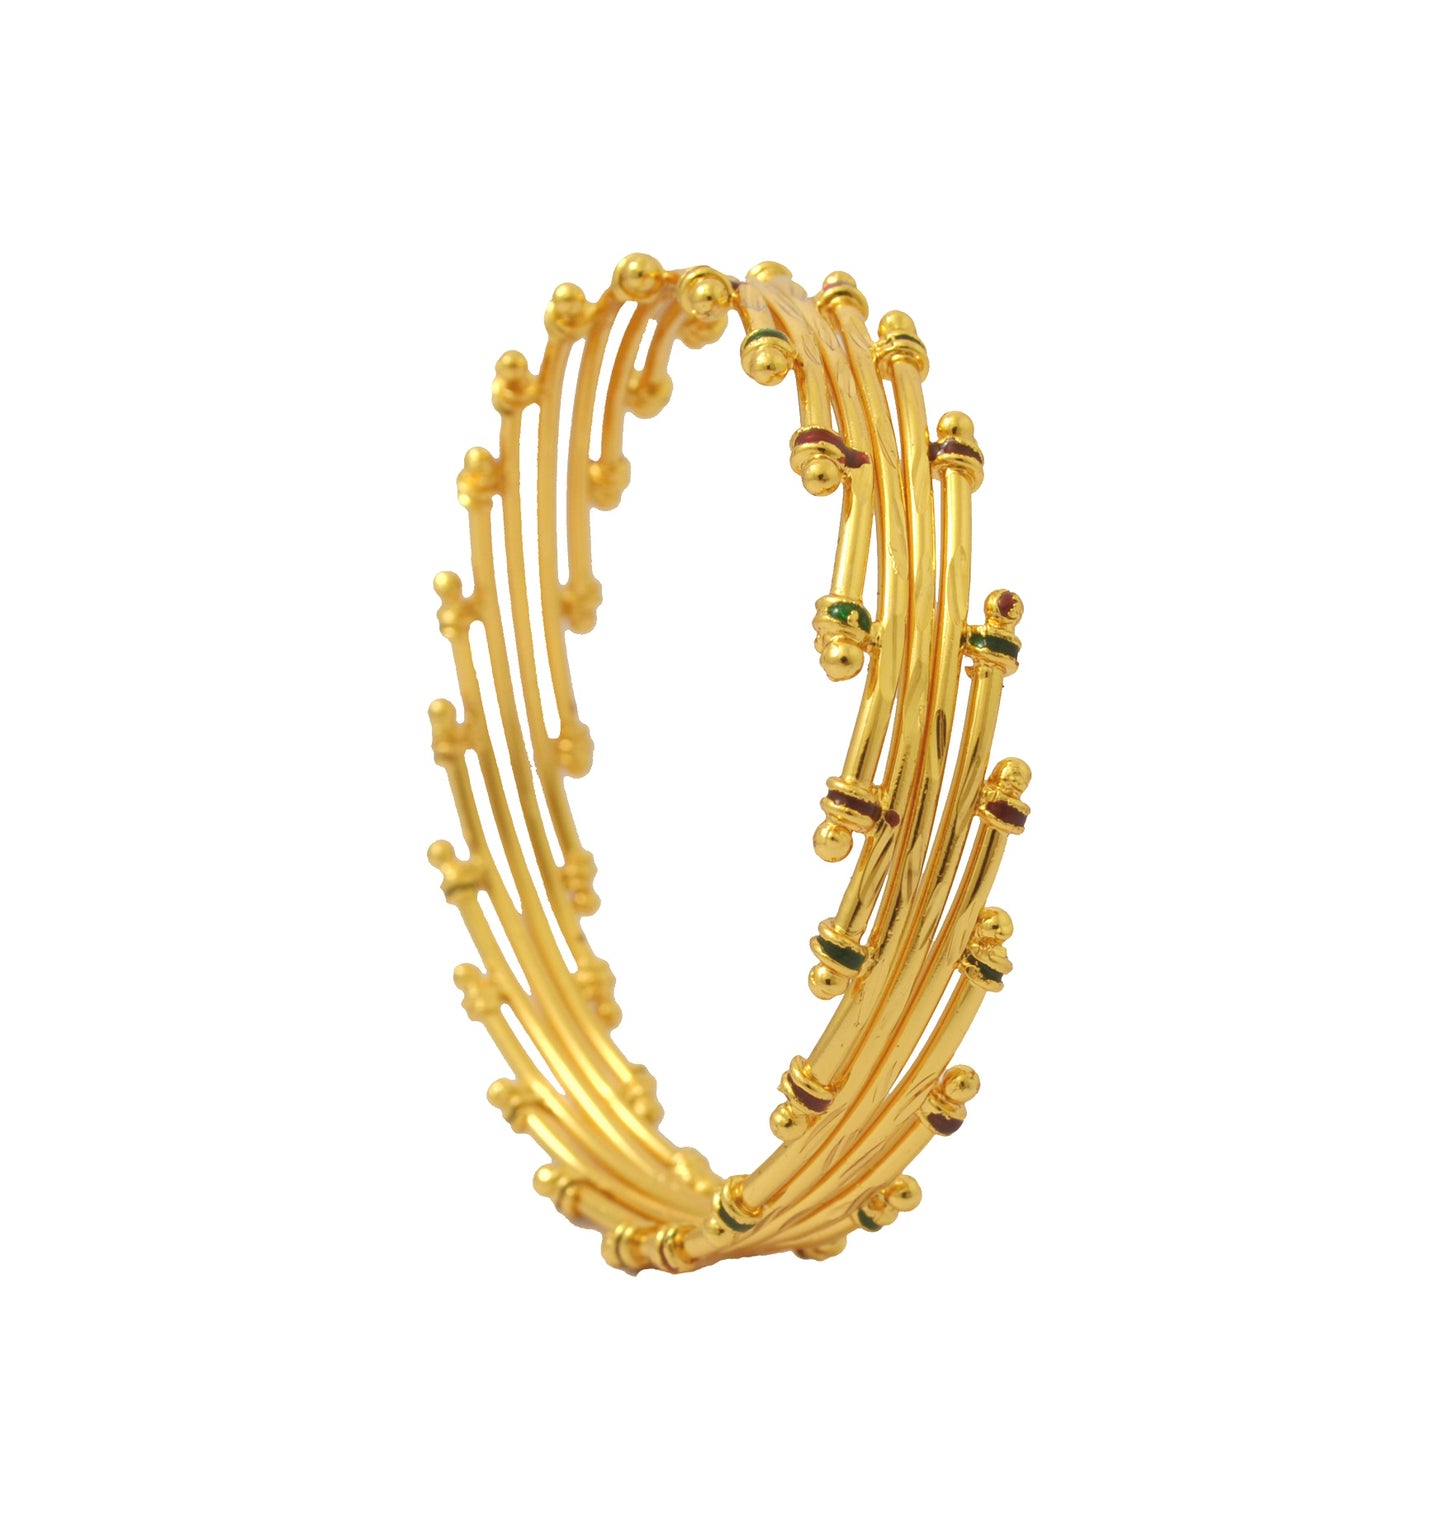 Unique design gold plated bangle - Bangle by Shrayathi